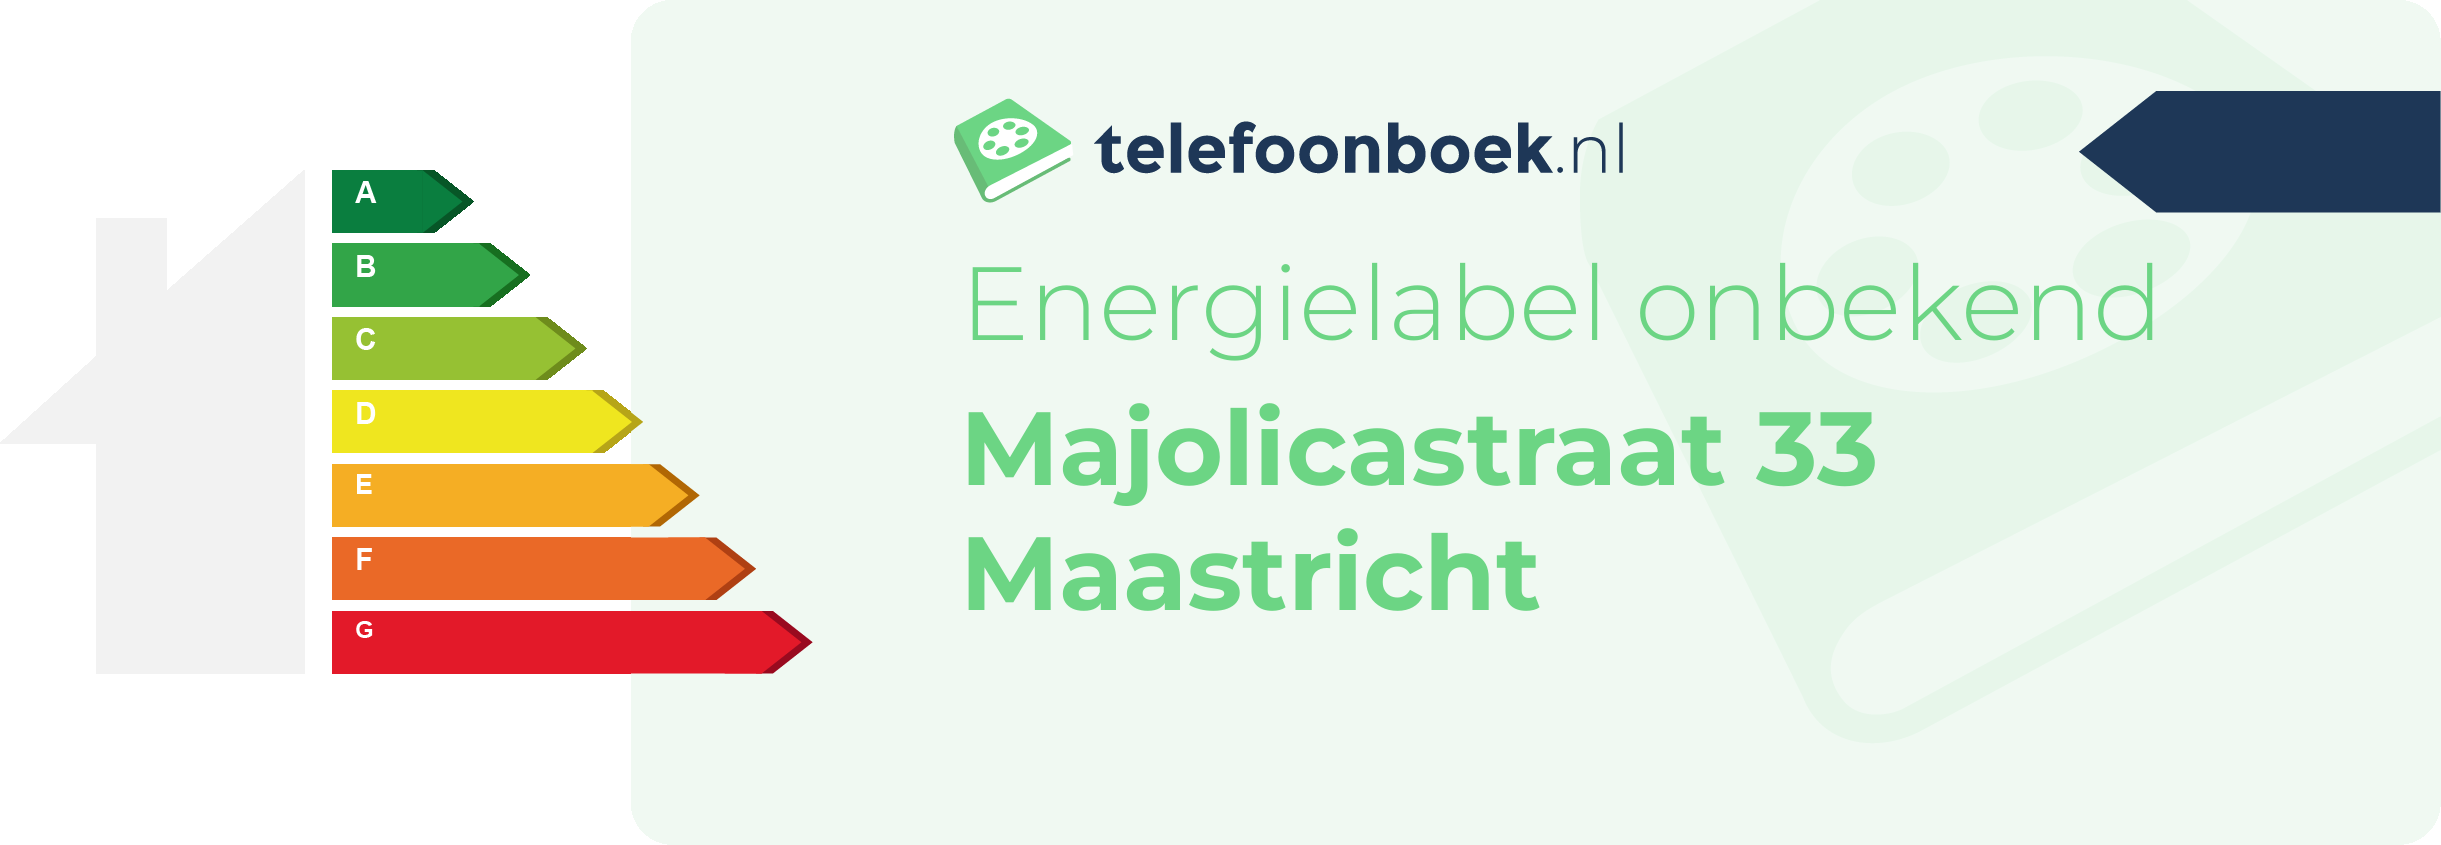 Energielabel Majolicastraat 33 Maastricht